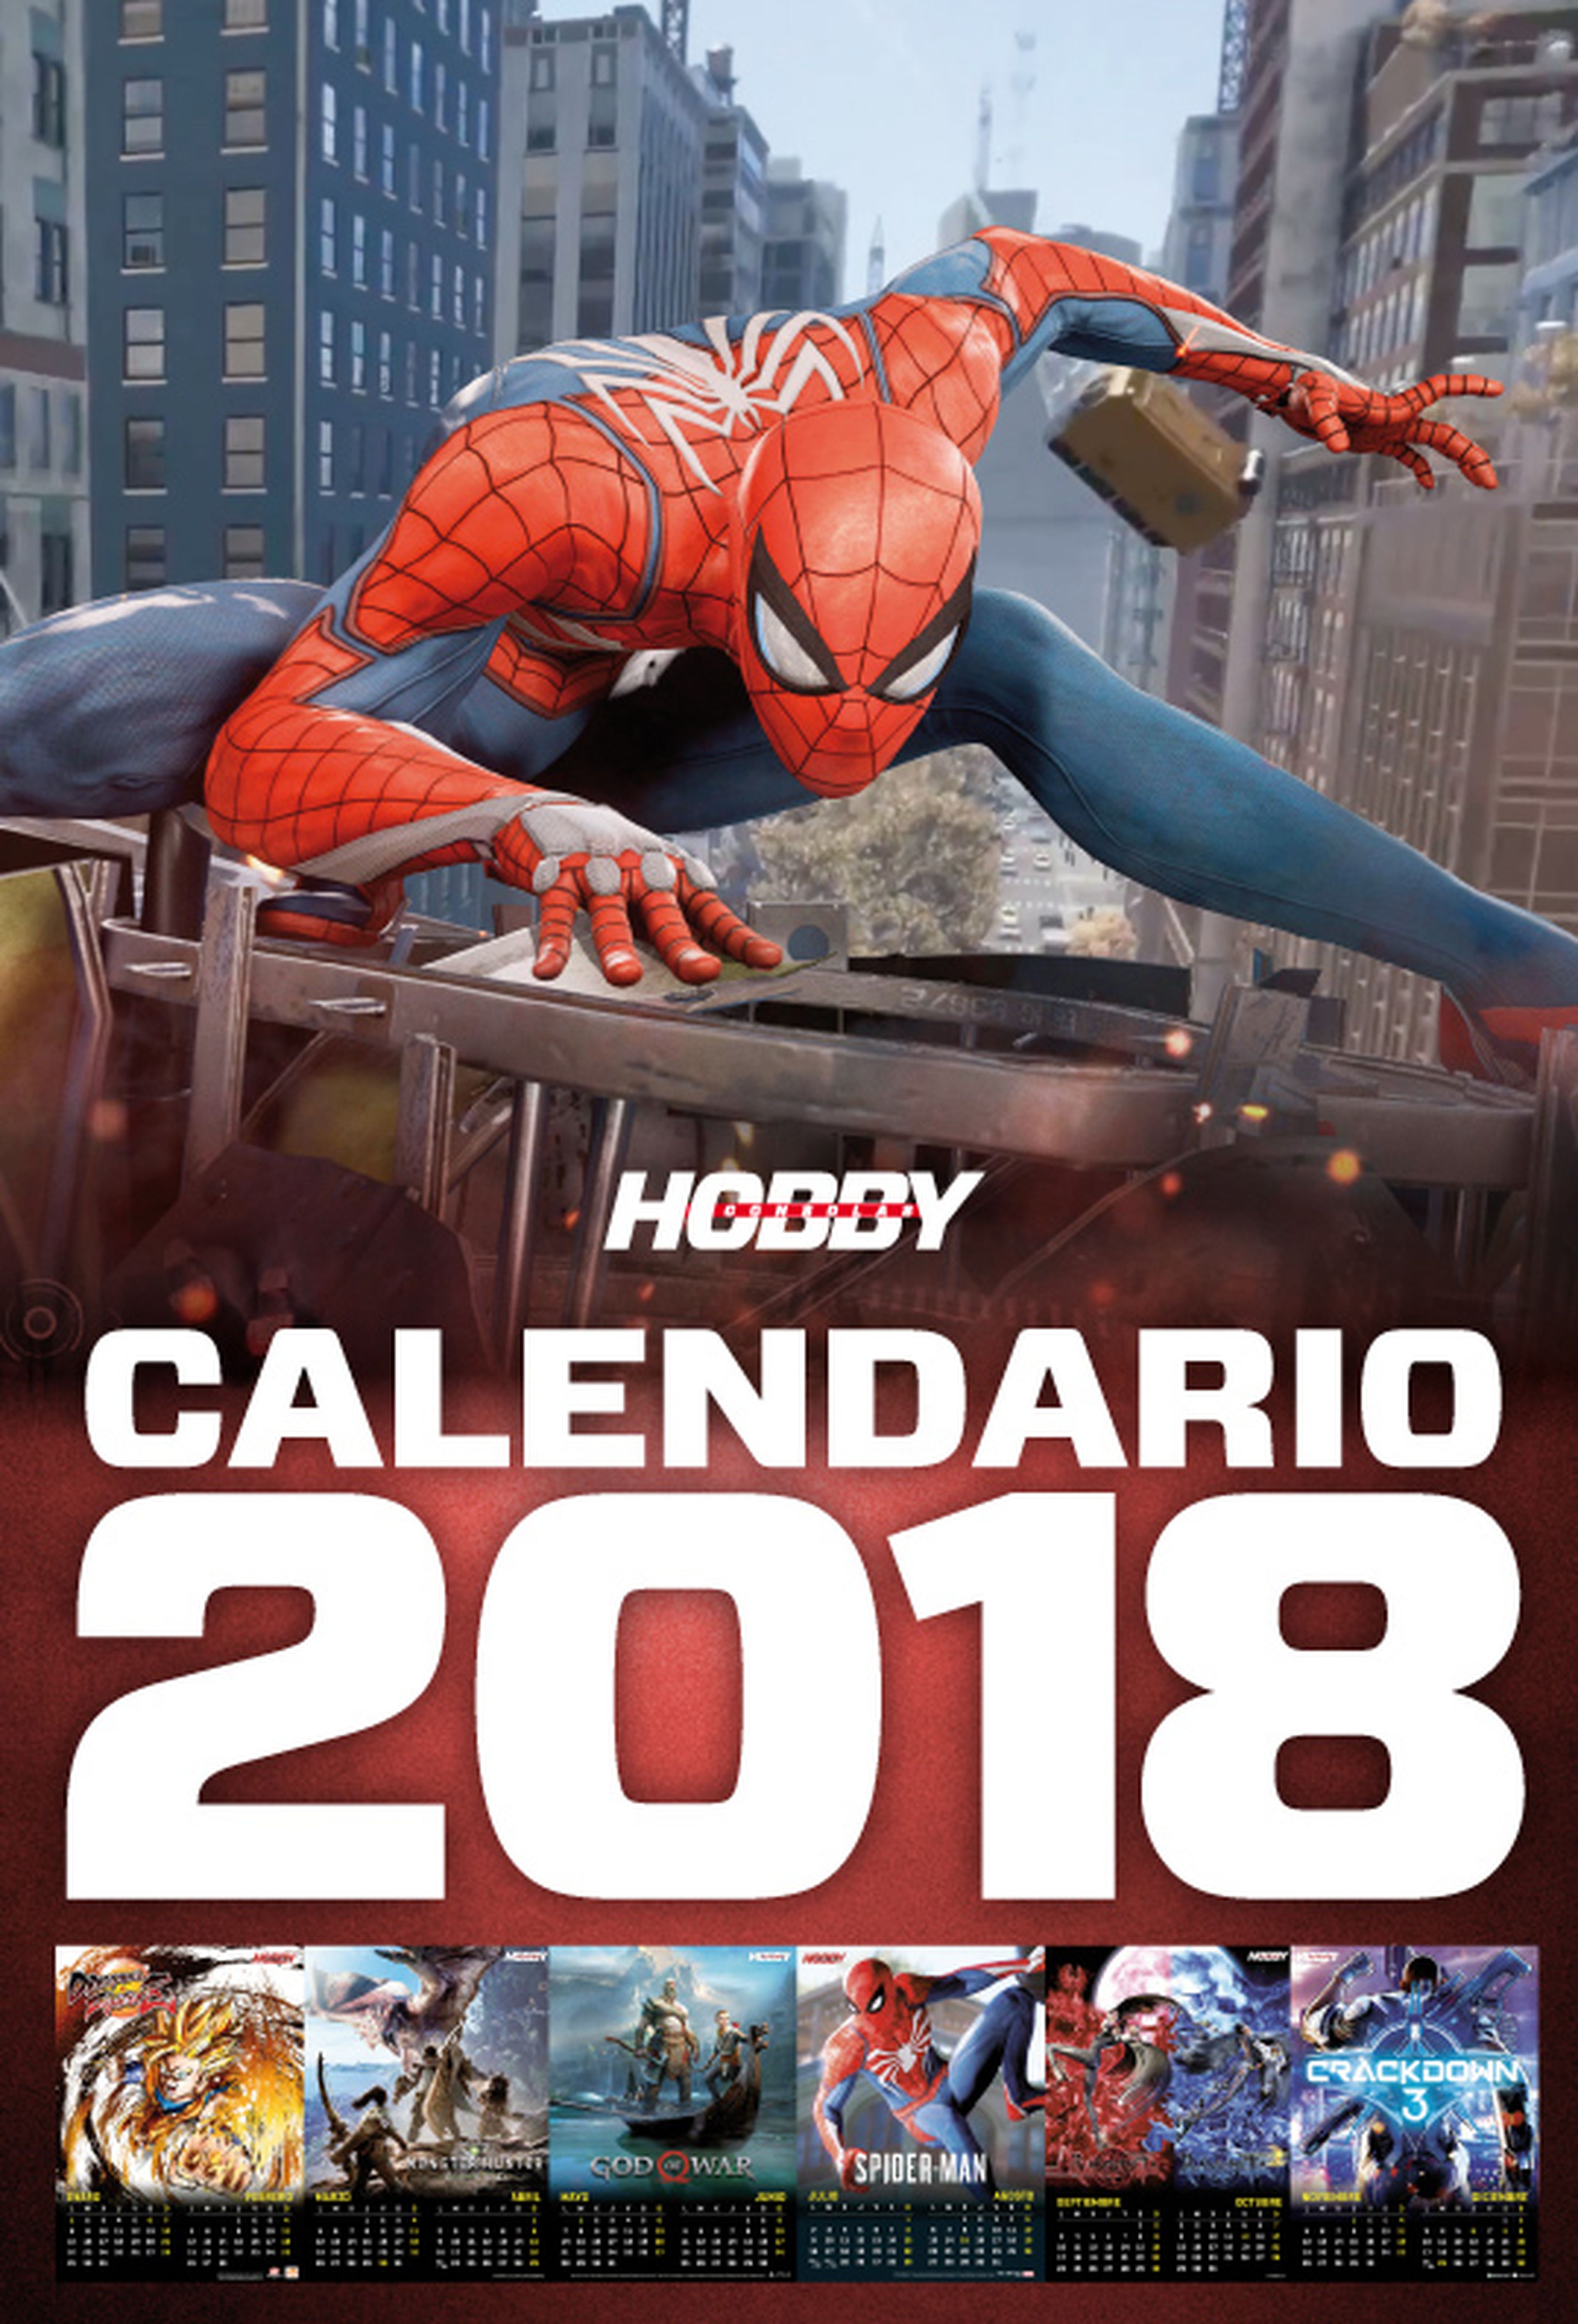 Hobby Consolas 318, a la venta con calendario y reportaje de 2018